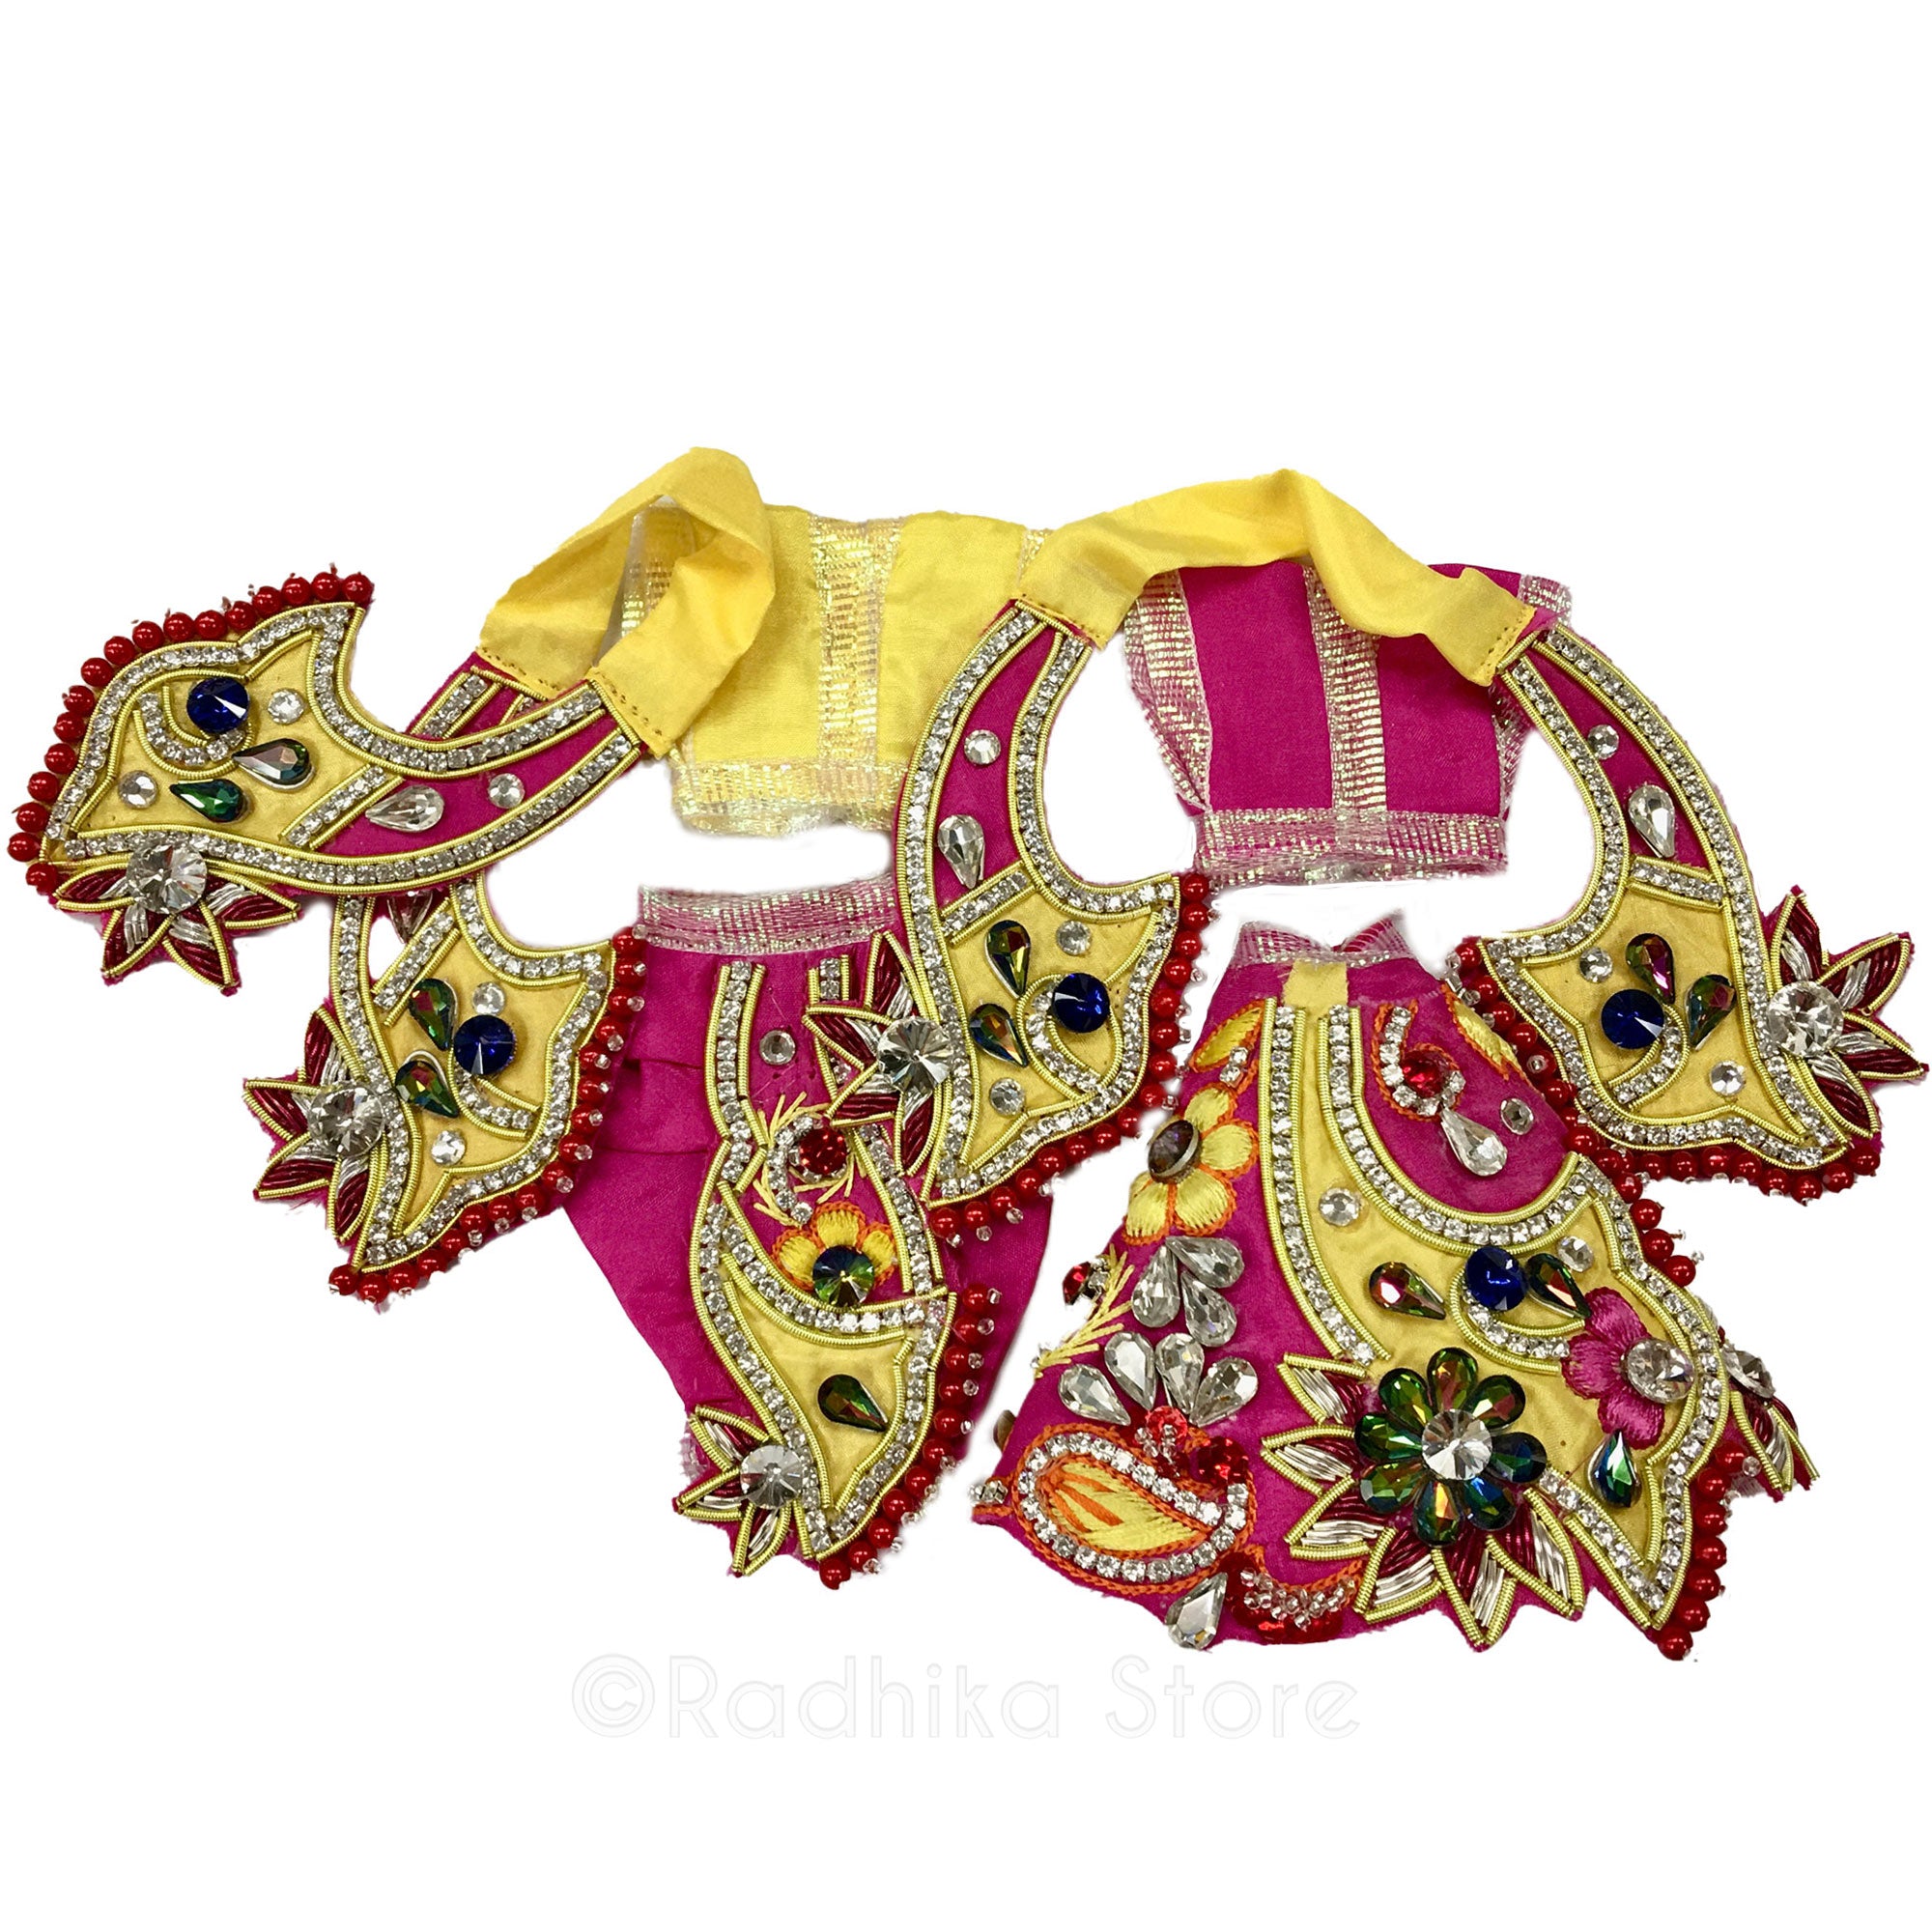 Radhika Stava - Yellow And Bright Pink - Radha Krishna Deity Outfit